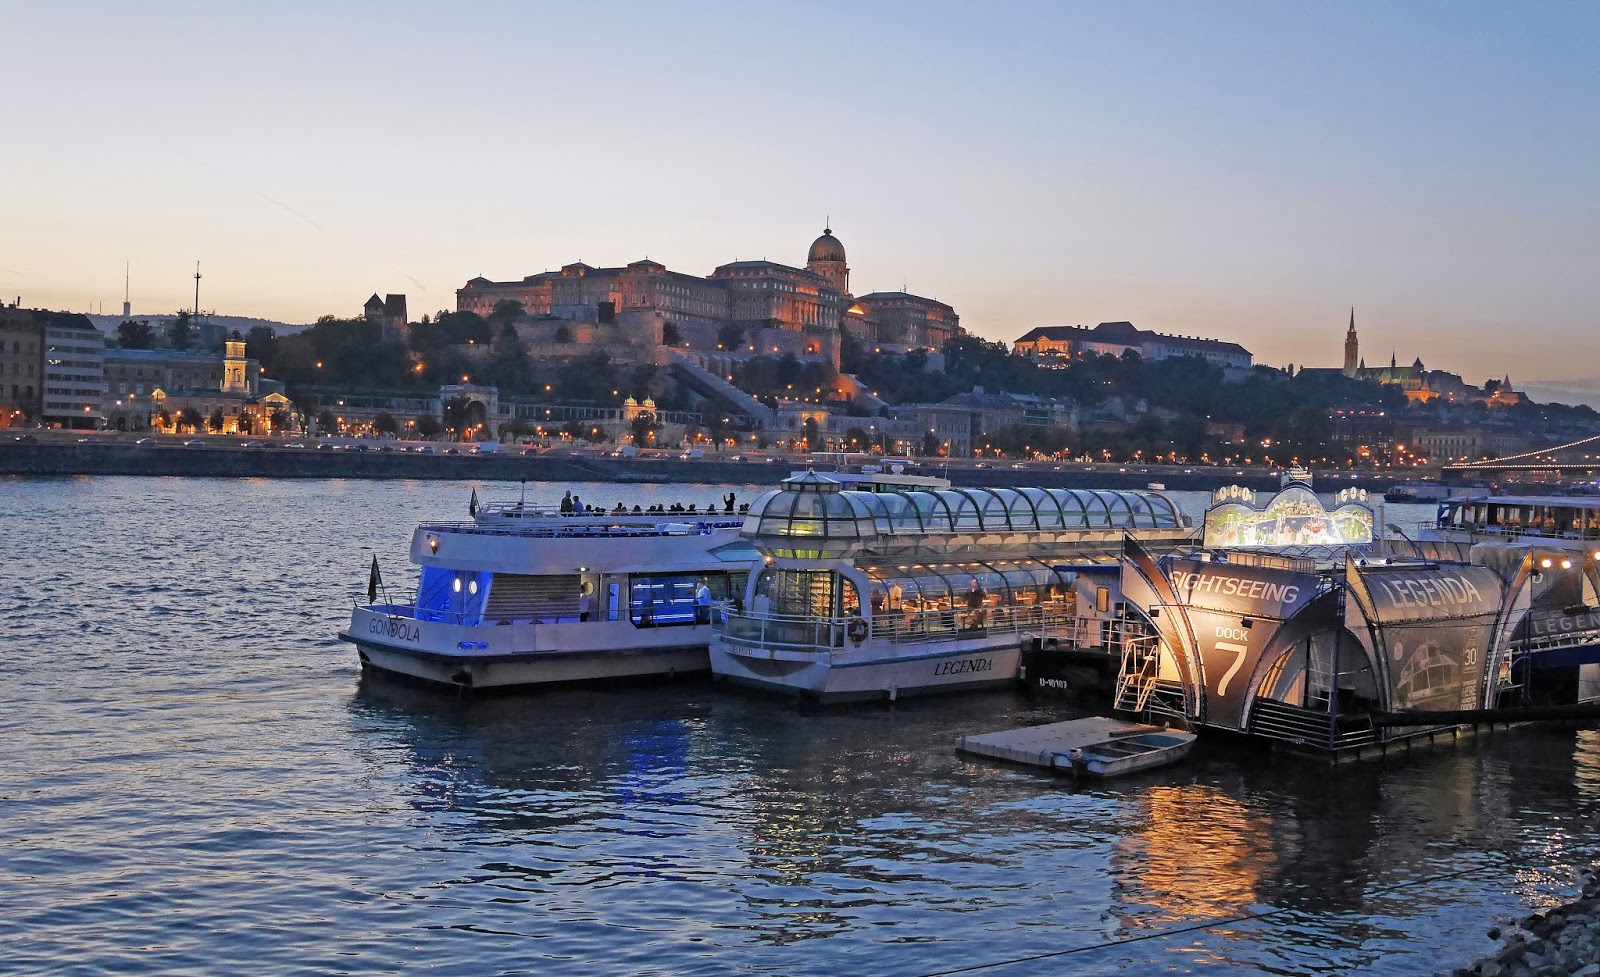 The boat dock for Legenda Cruises on the Danube, Budapest